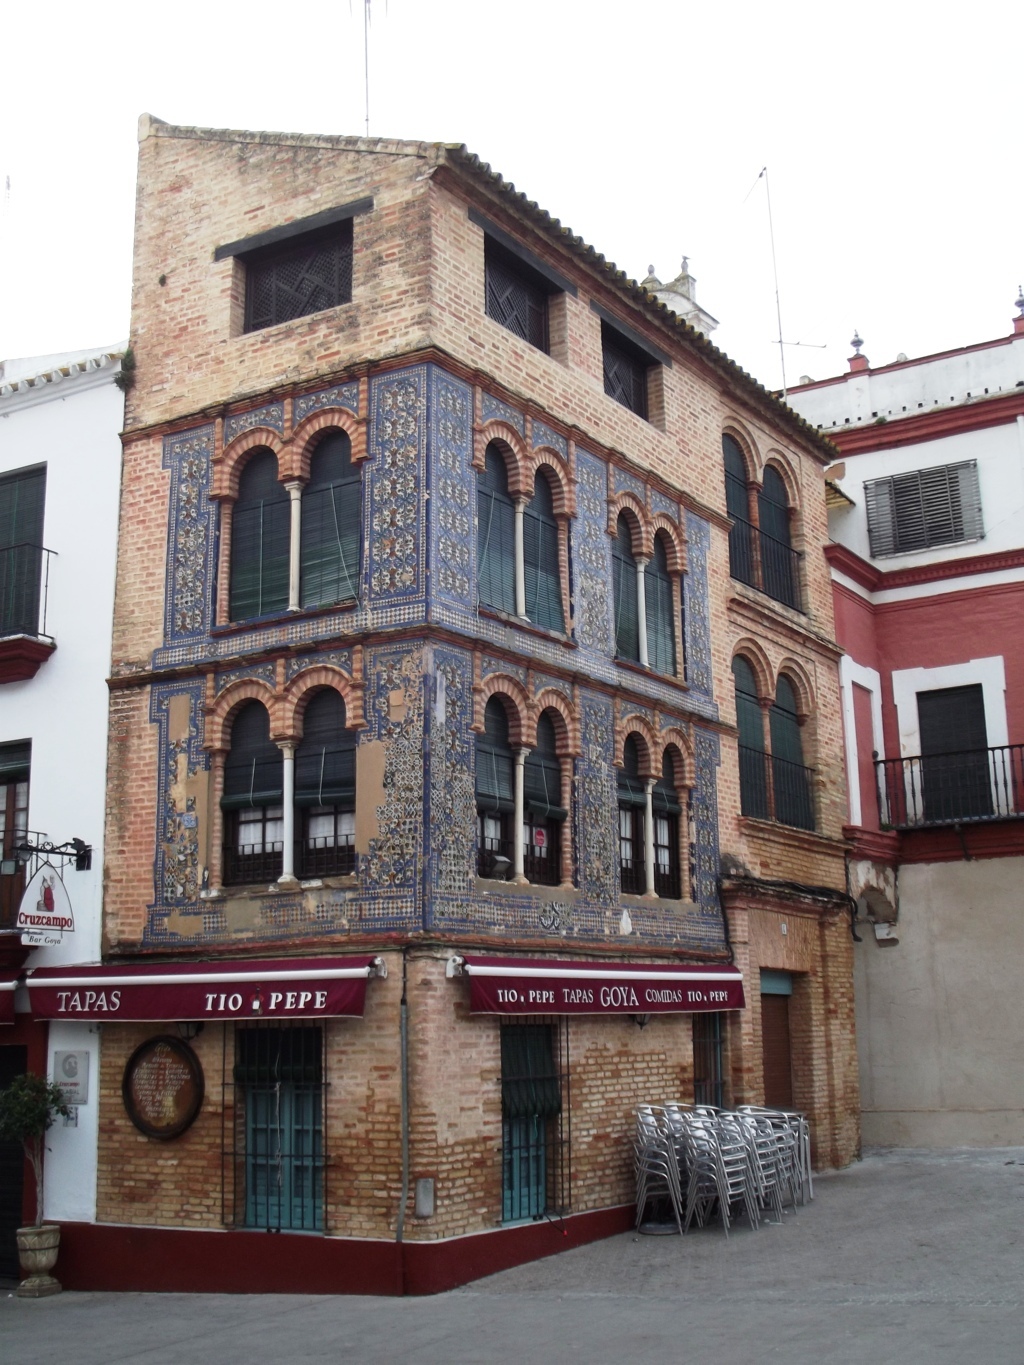 01392. Decoración cerámica en fachada. Carmona. Sevilla.